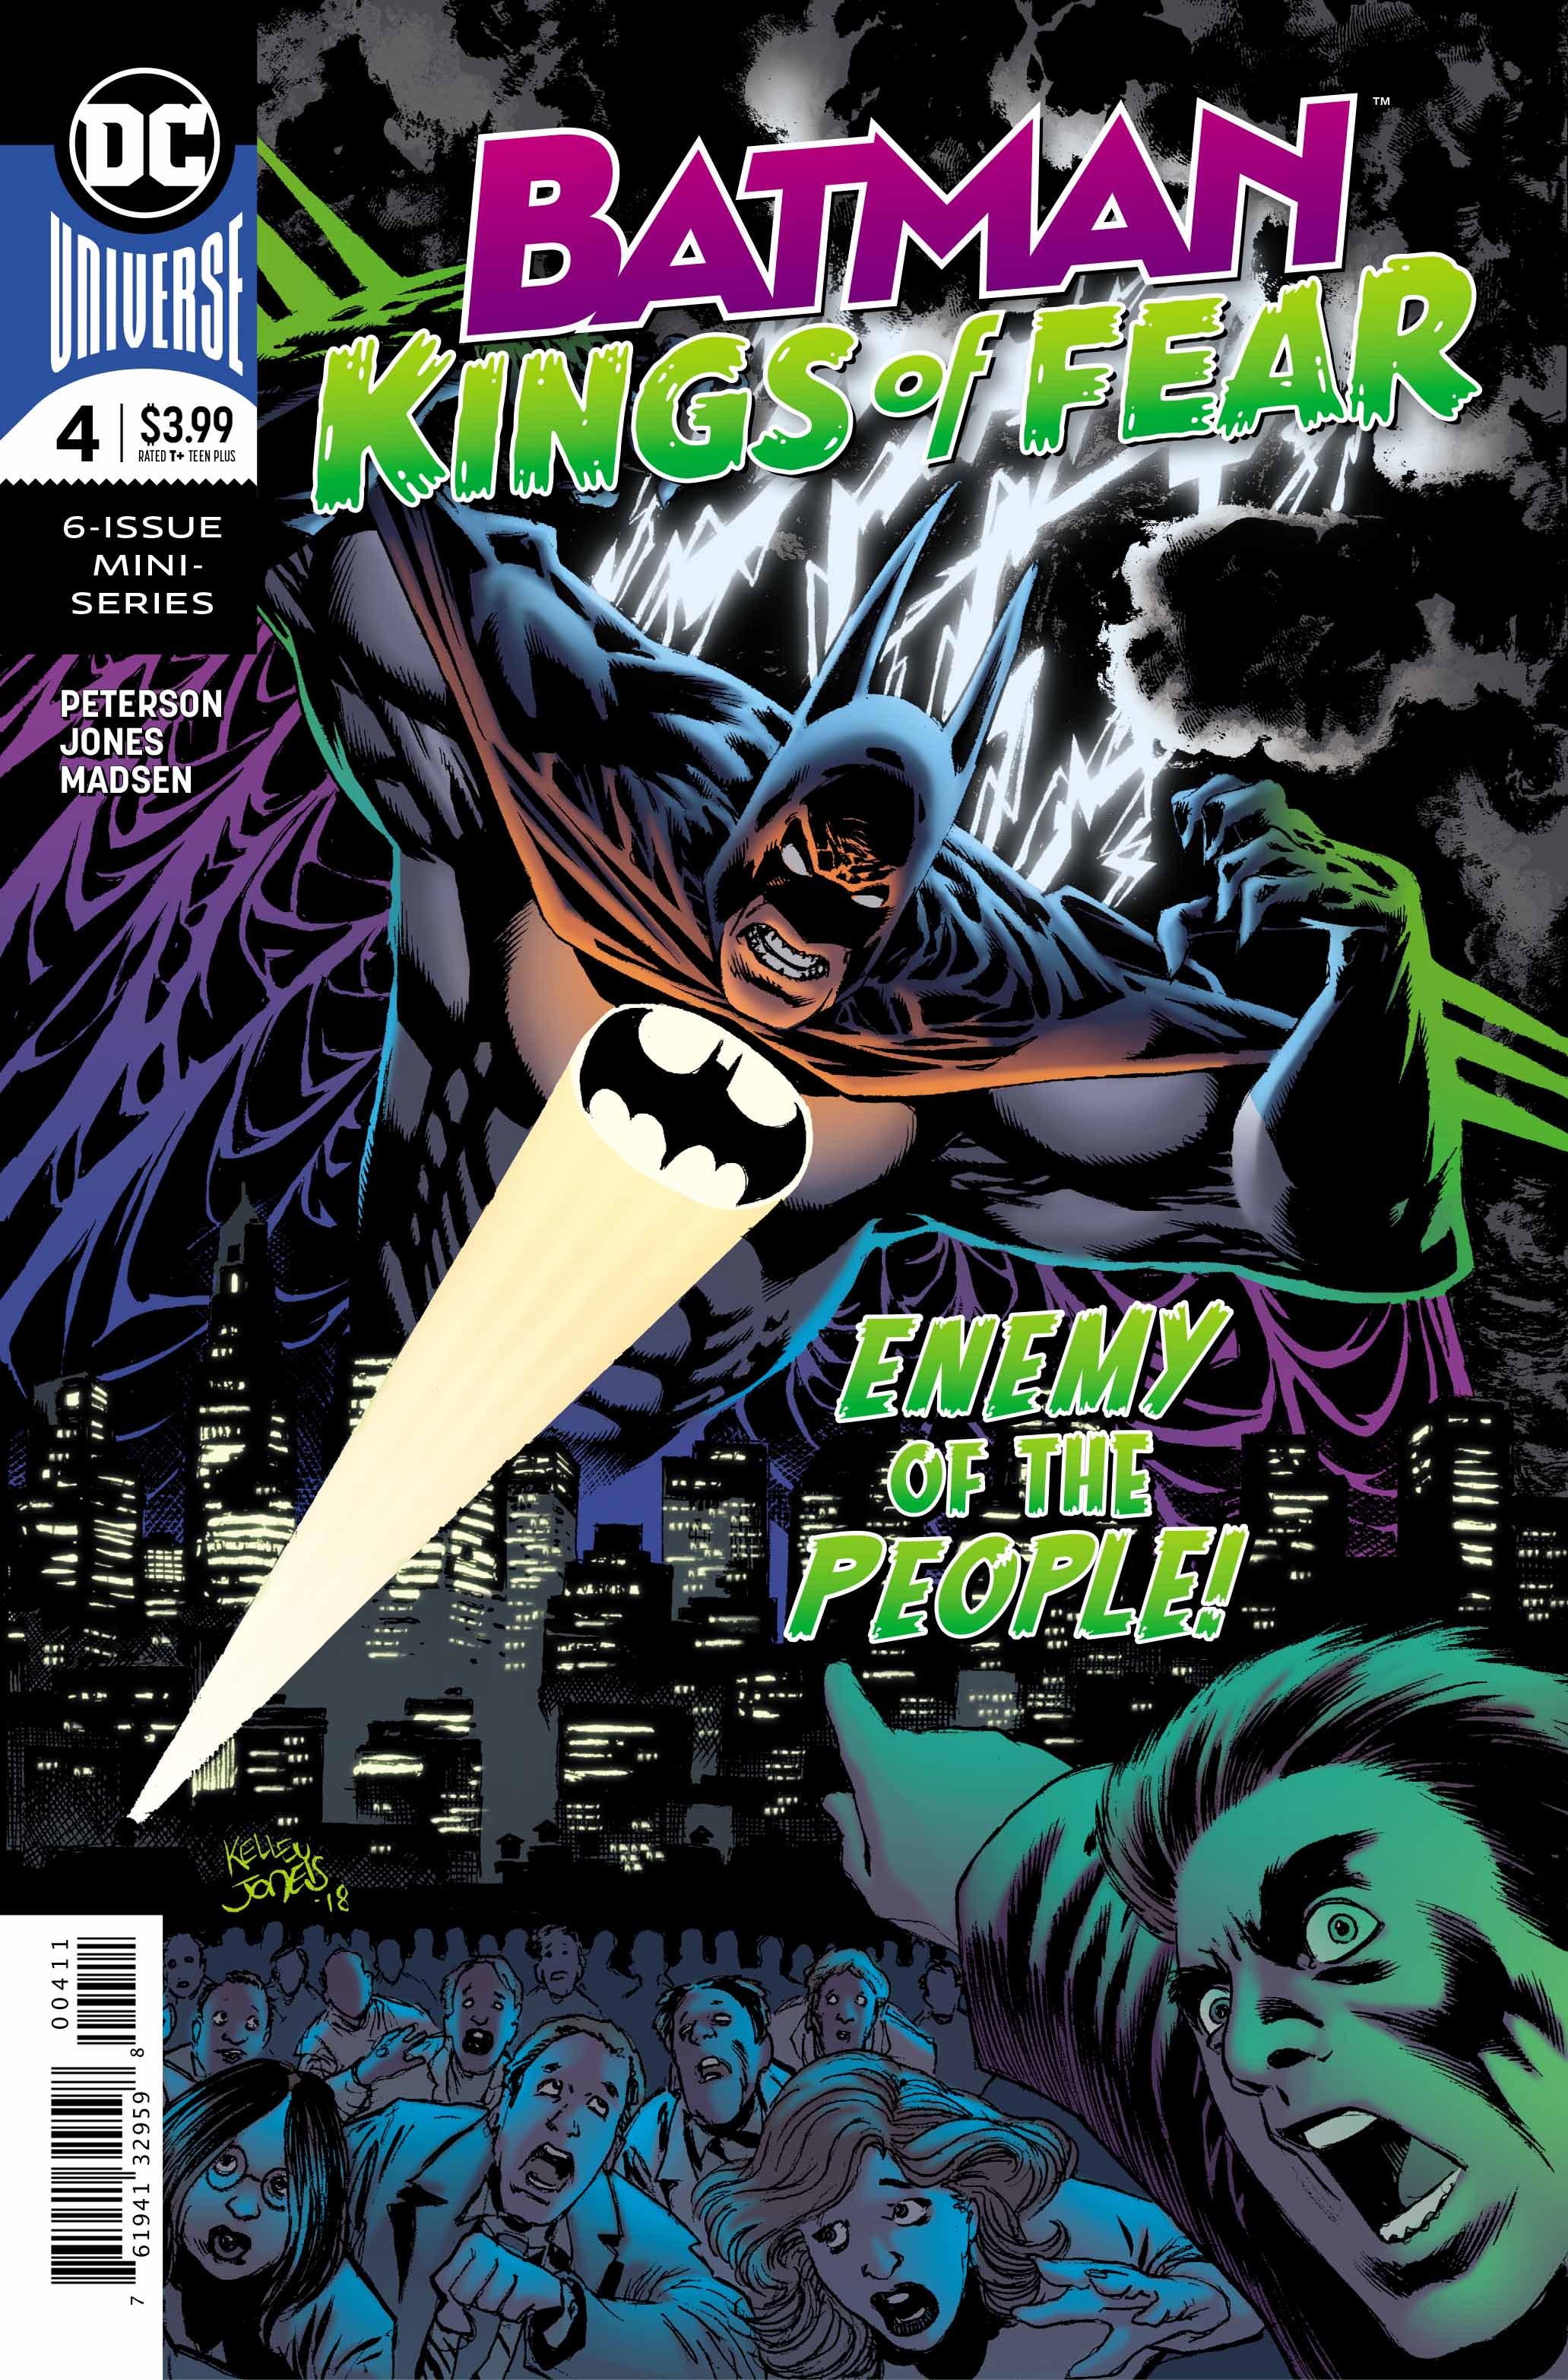 Batman: Kings of Fear #4 Review